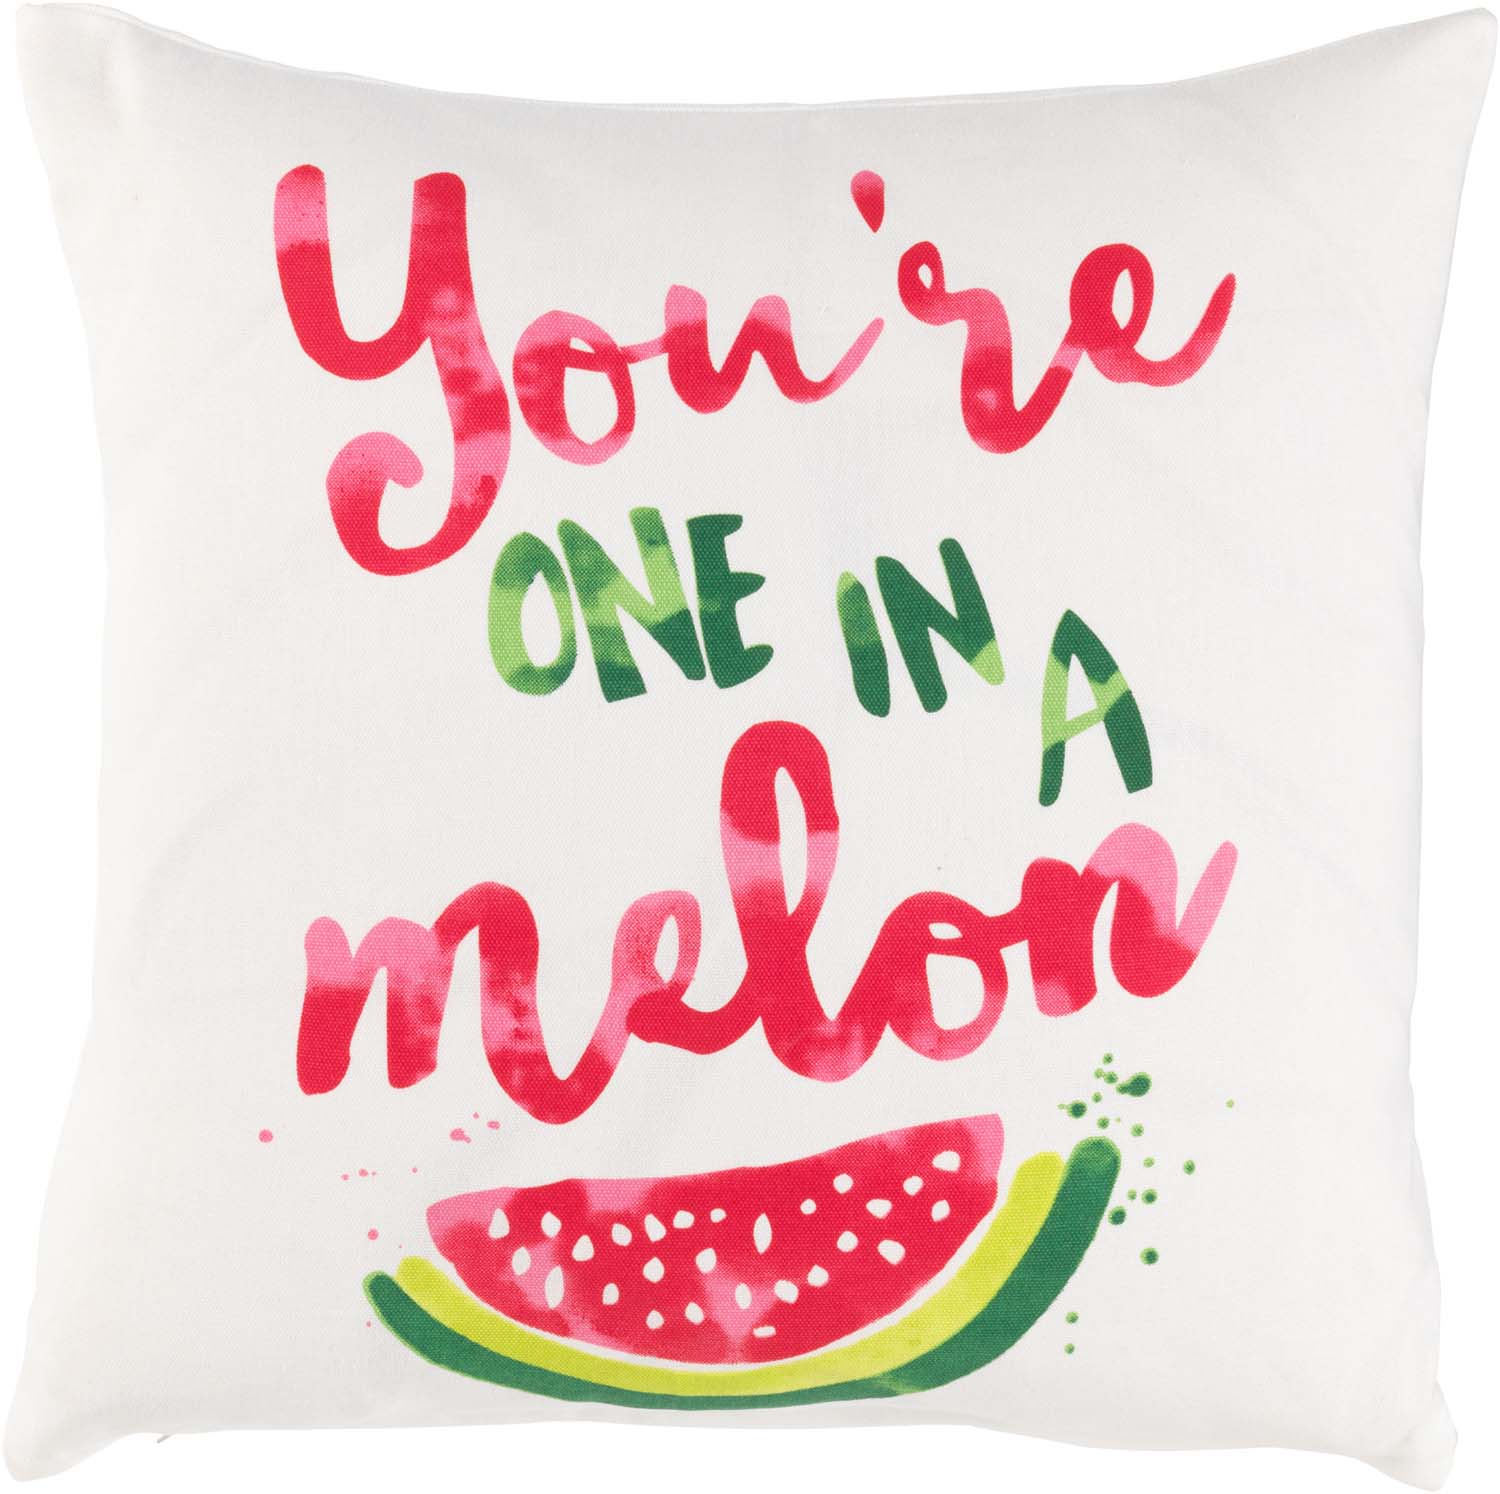 EVIE - Sierkussen Meloen 45x45 cm - ivoor / wit - You're one in a melon